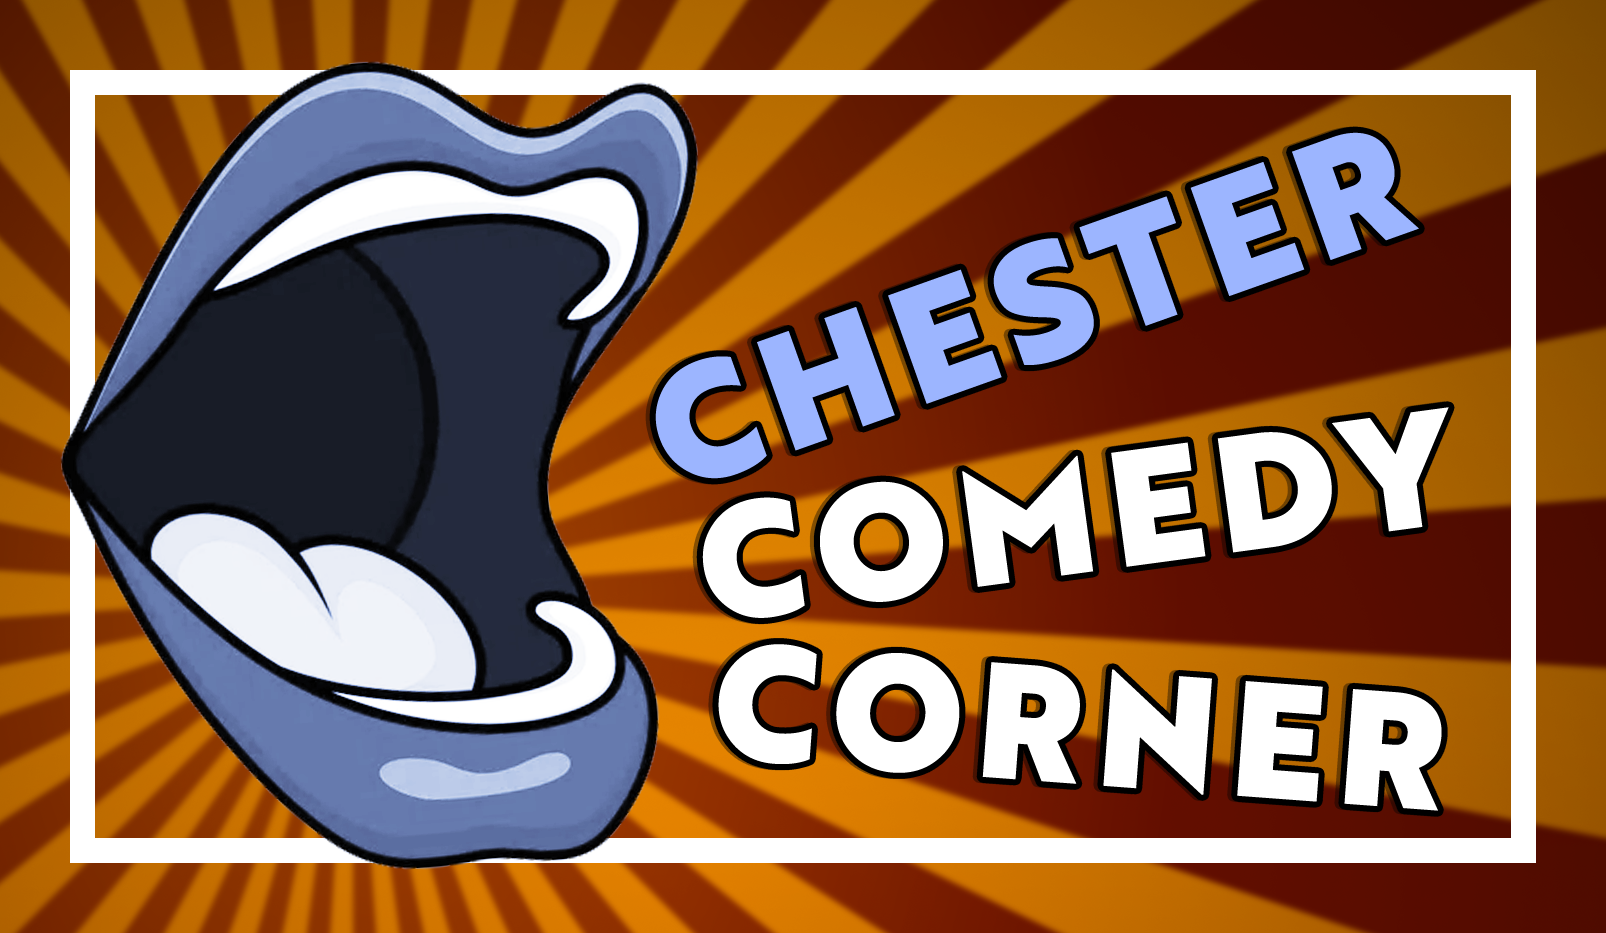 Chester Comedy Corner